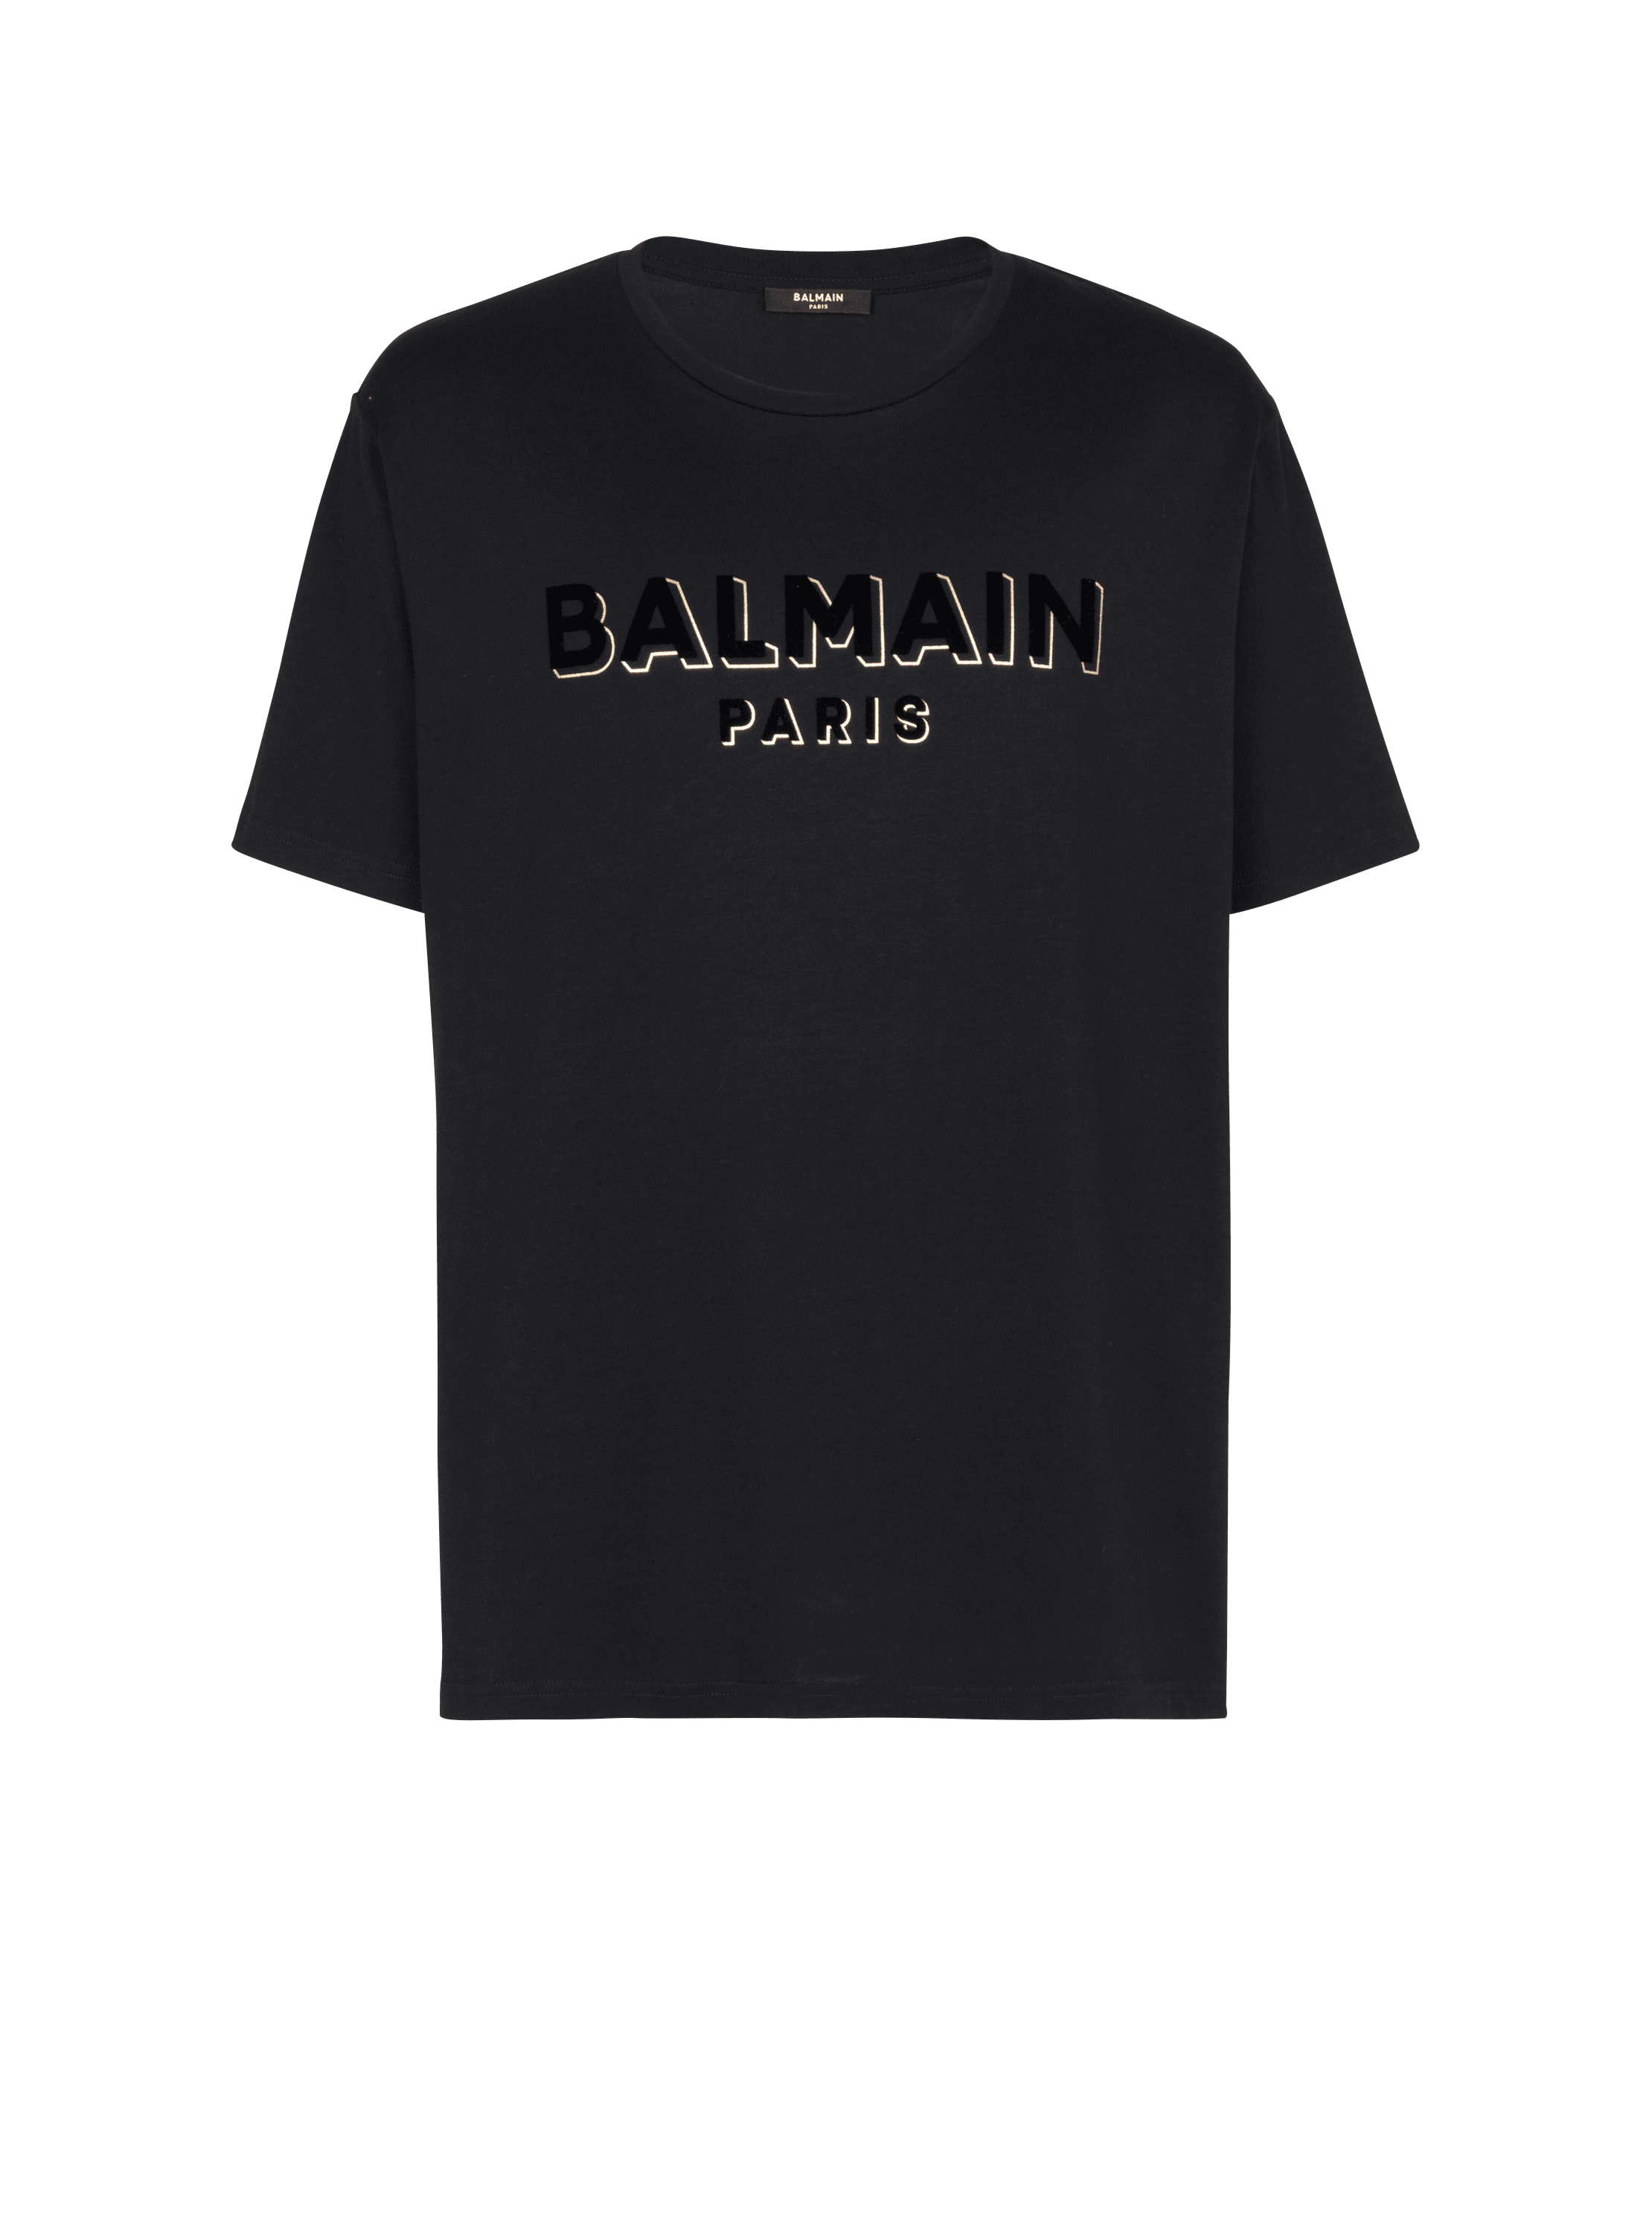 T-shirt Balmain floqué métallique, noir, hi-res